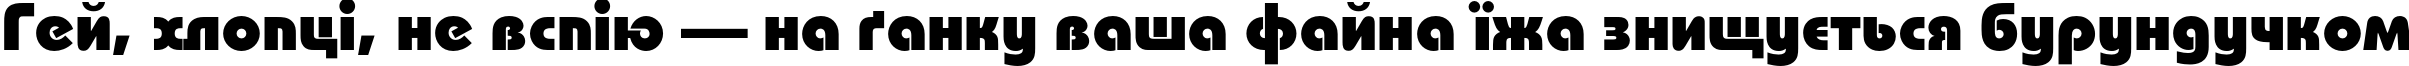 Пример написания шрифтом BauhausC Heavy текста на украинском